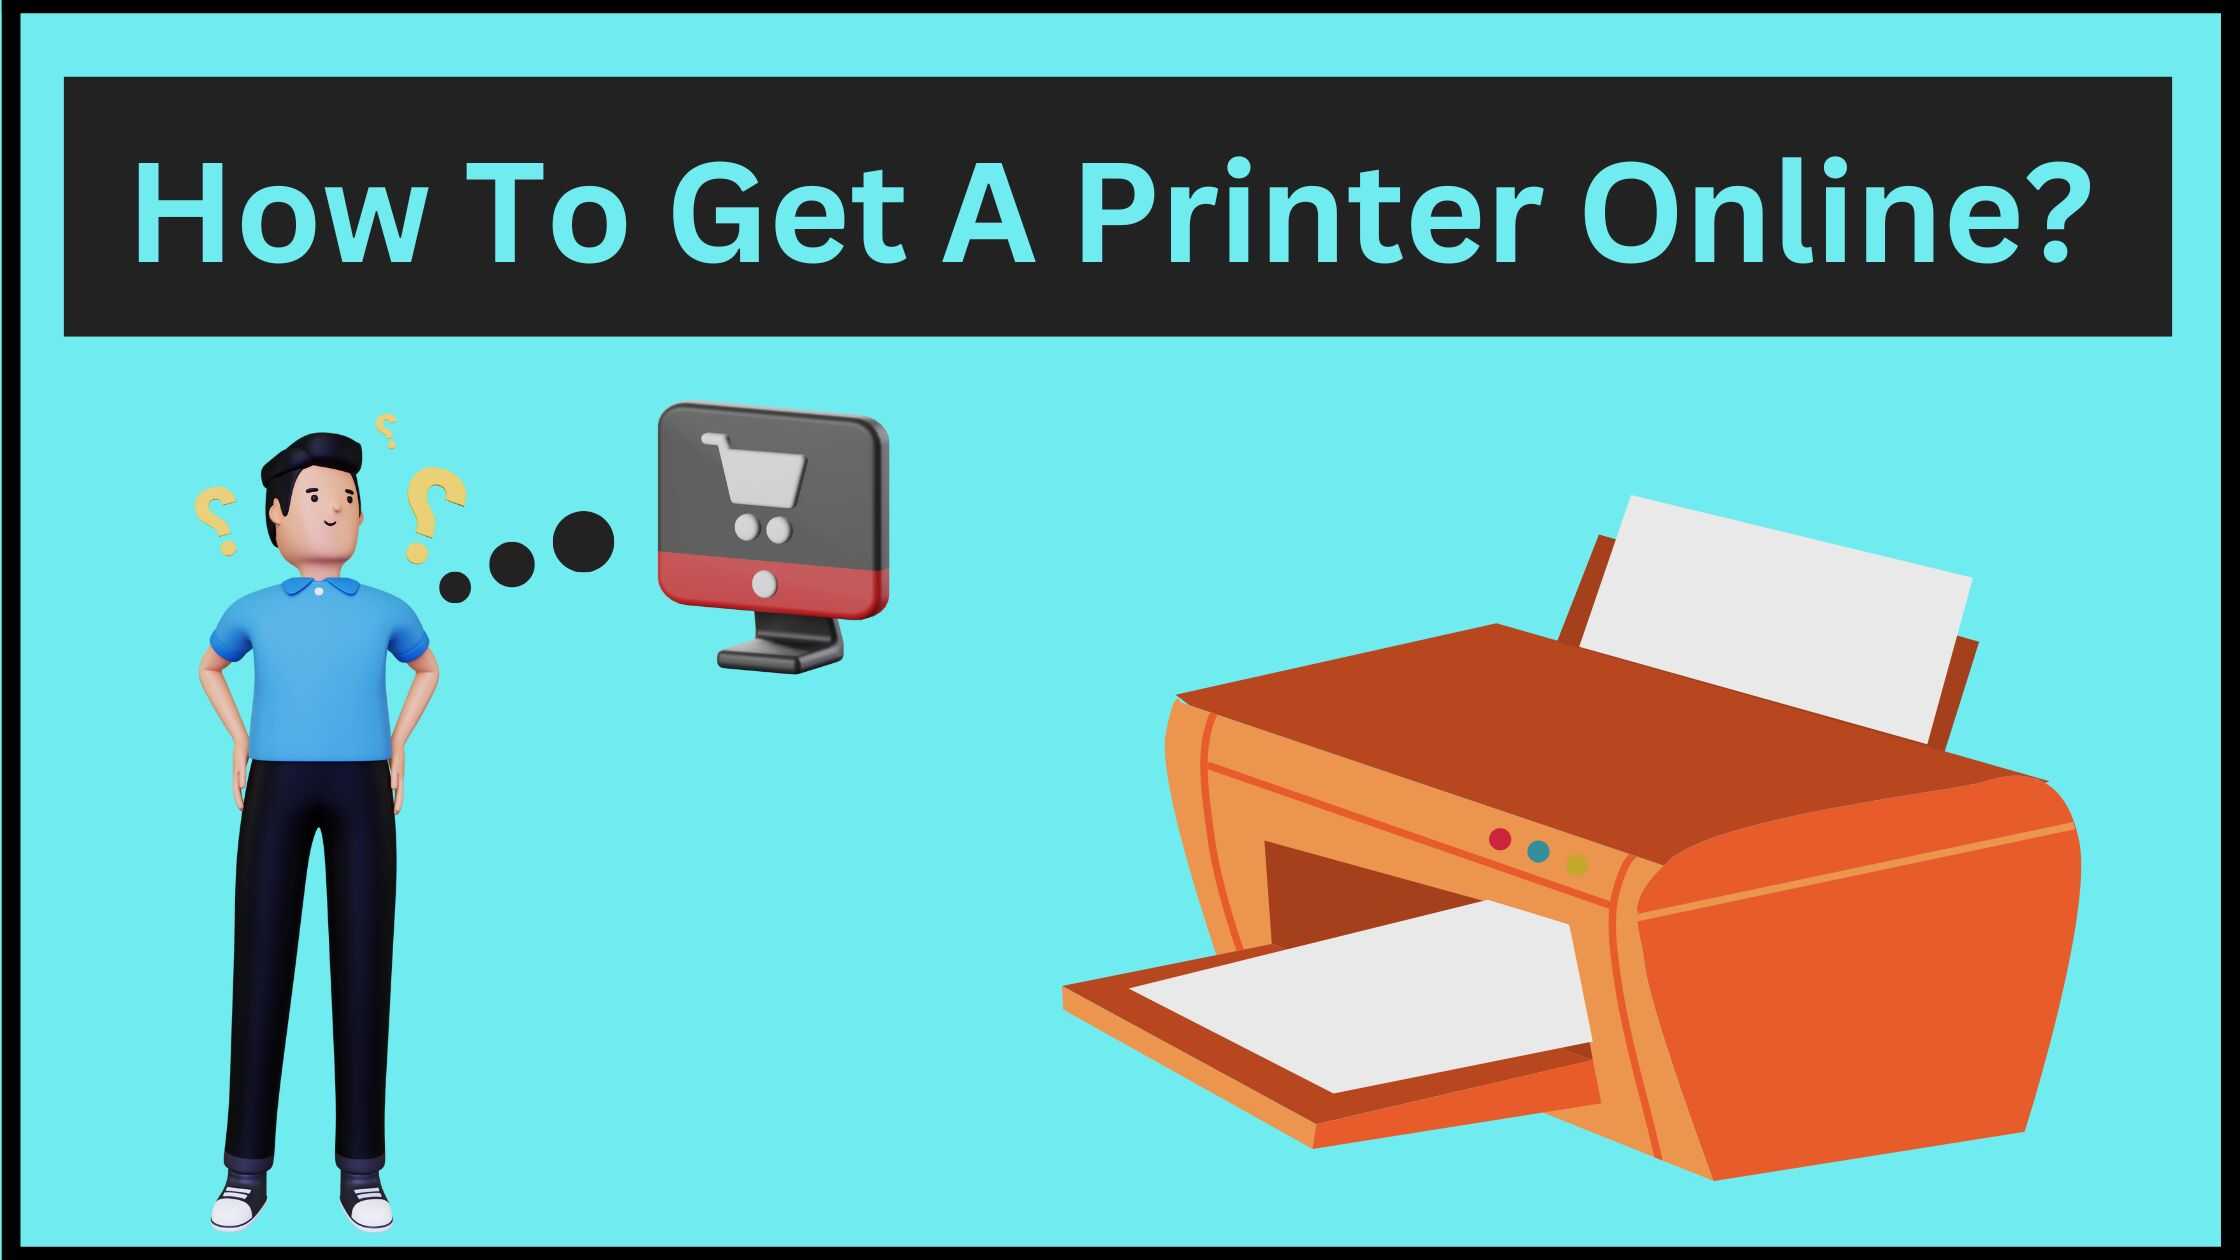 4 ways to get a printer online